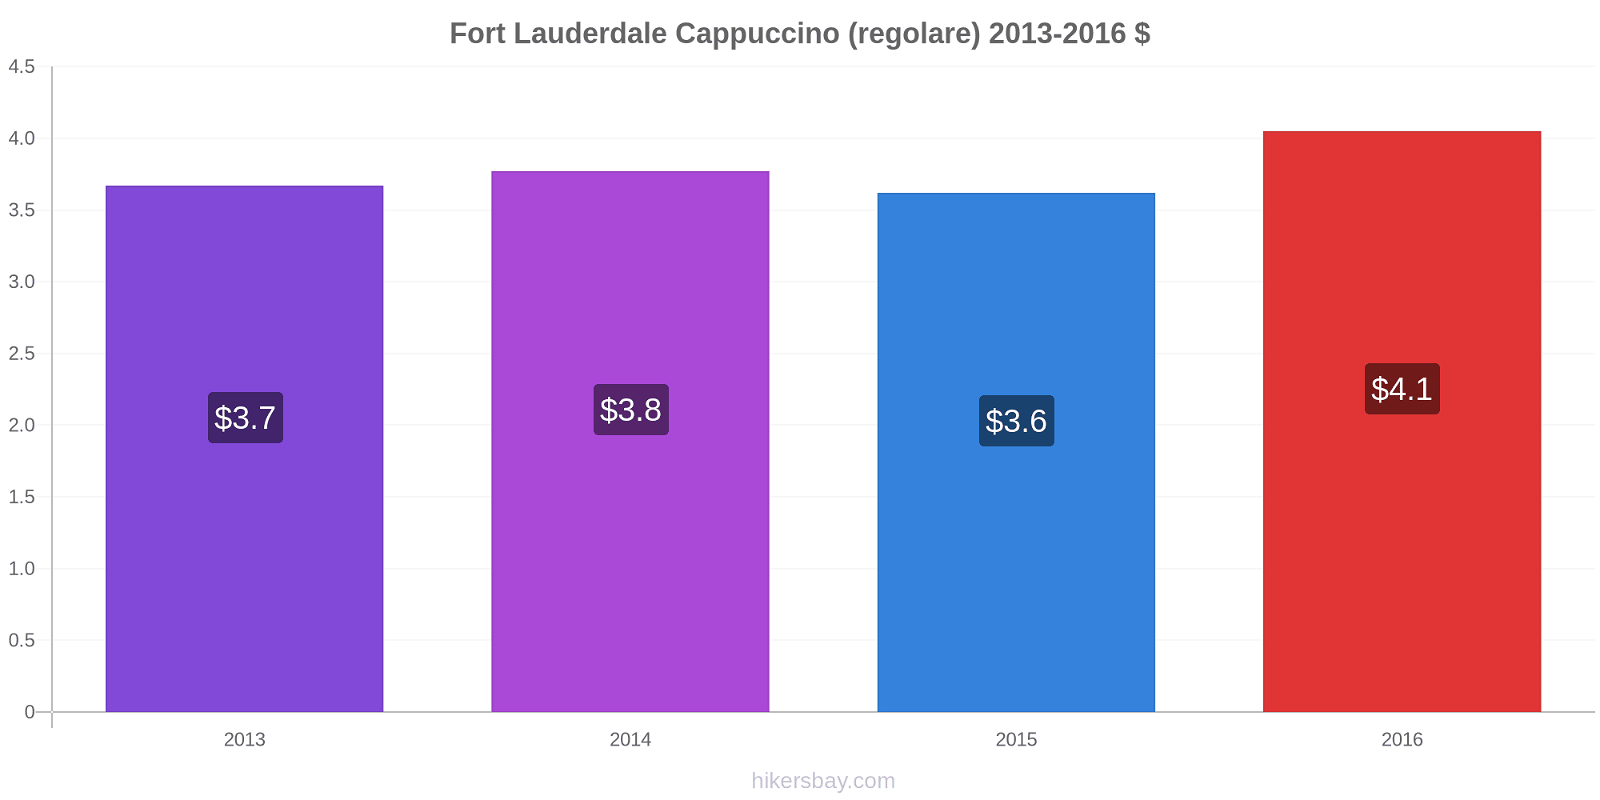 Fort Lauderdale variazioni di prezzo Cappuccino (normale) hikersbay.com